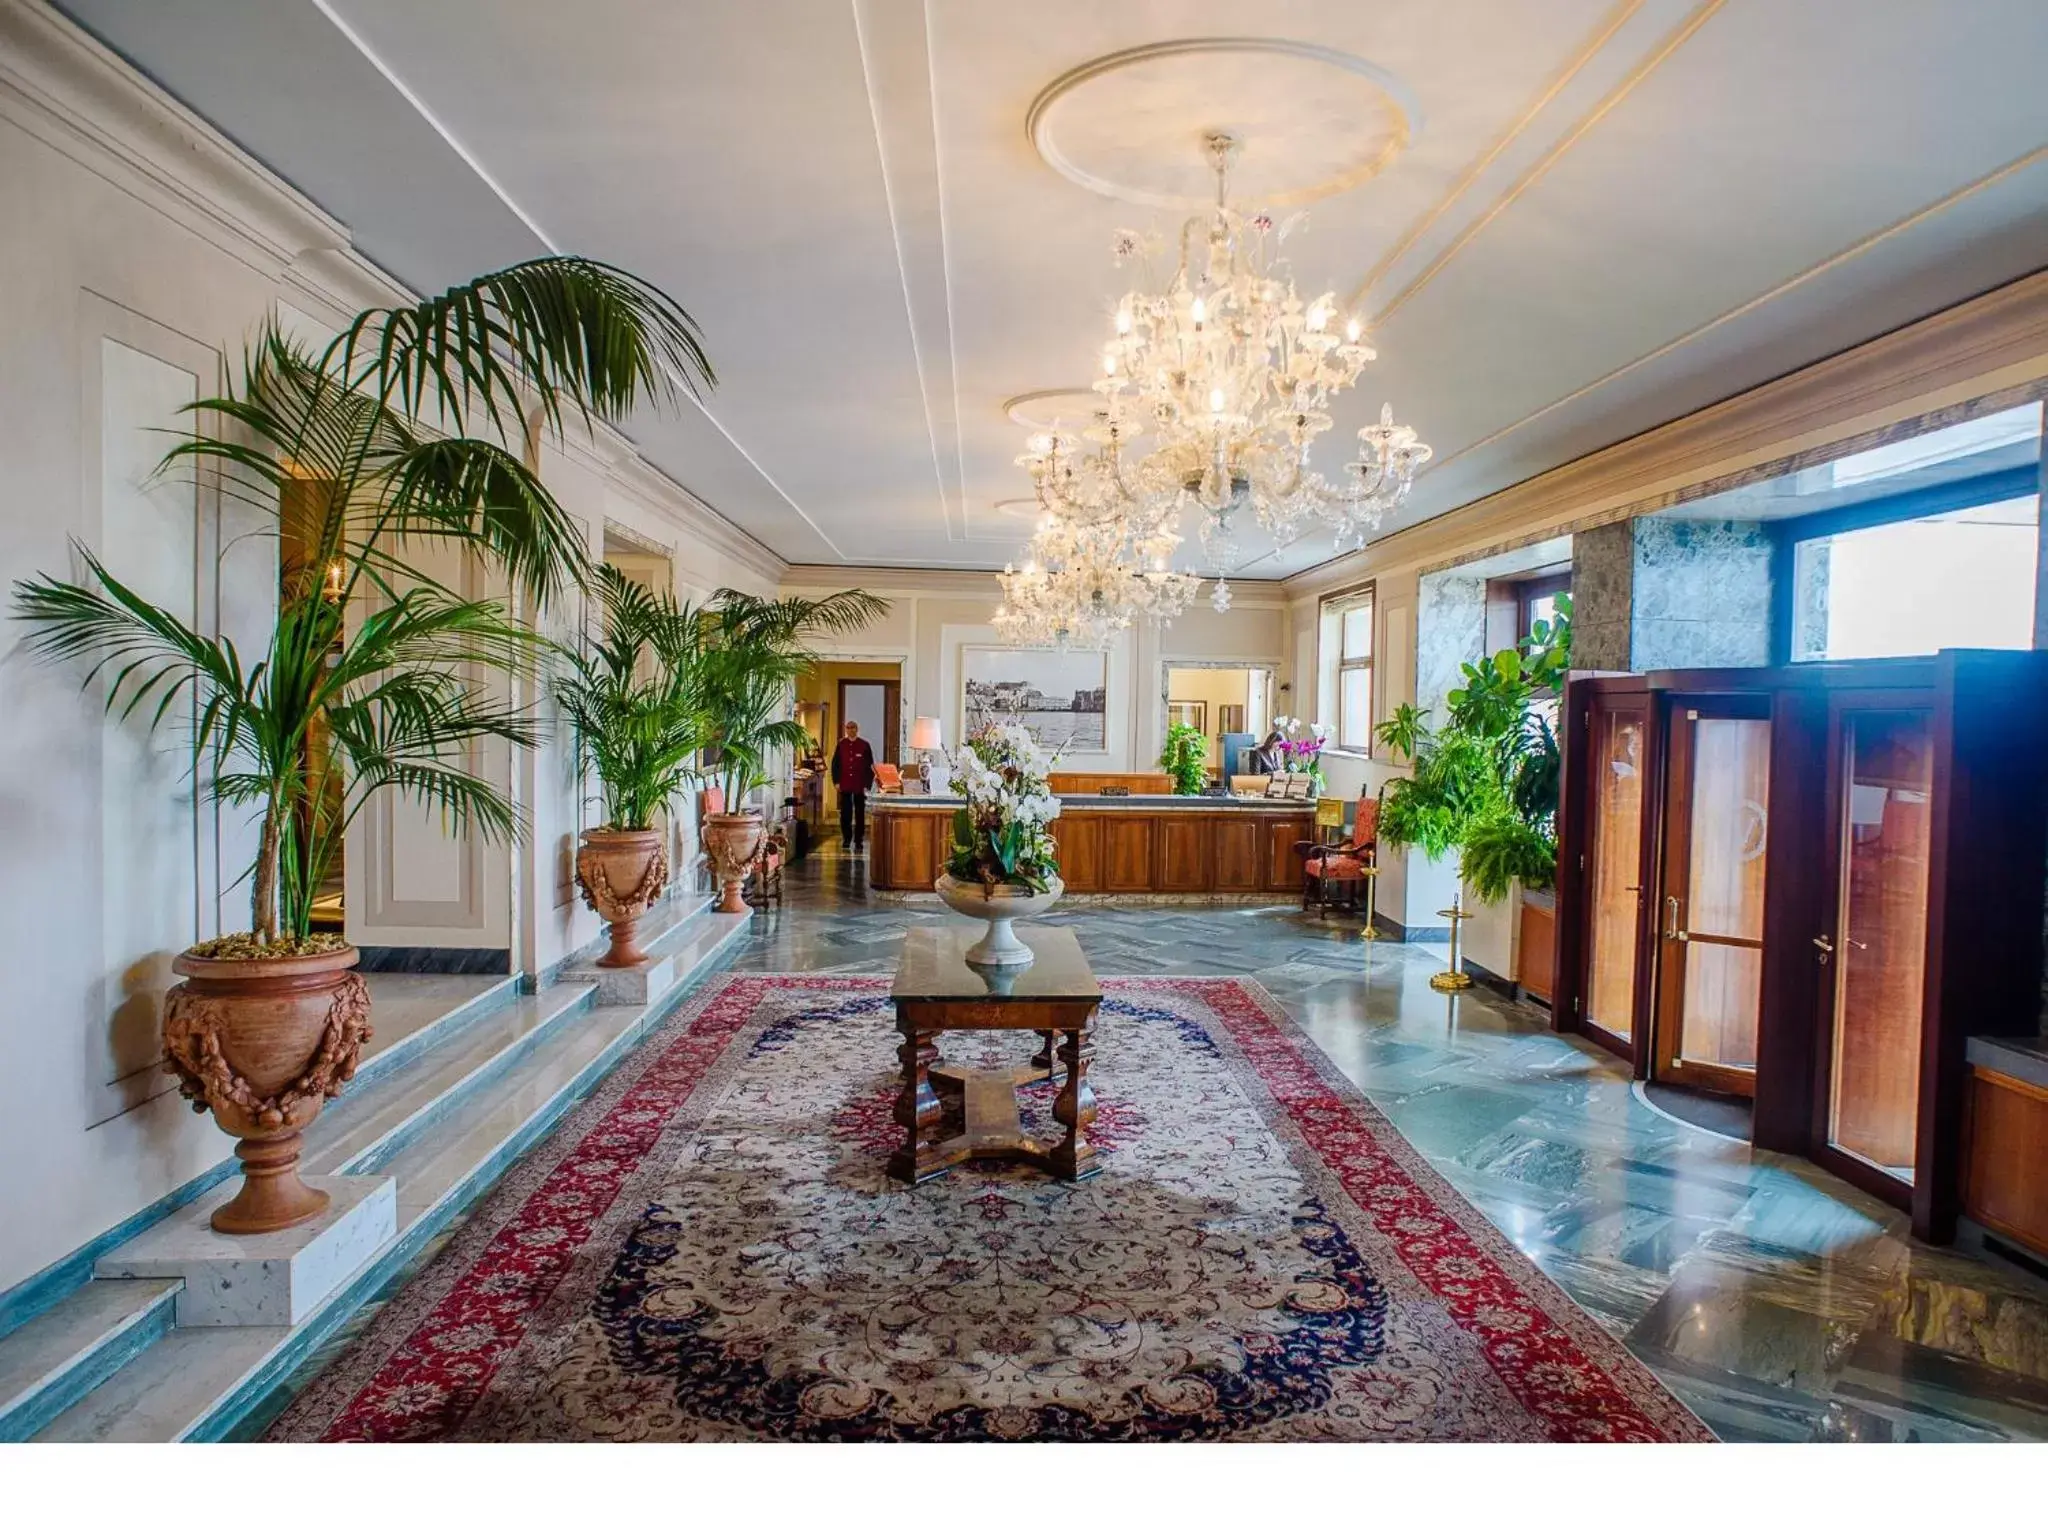 Lobby or reception, Lobby/Reception in Grand Hotel Vesuvio